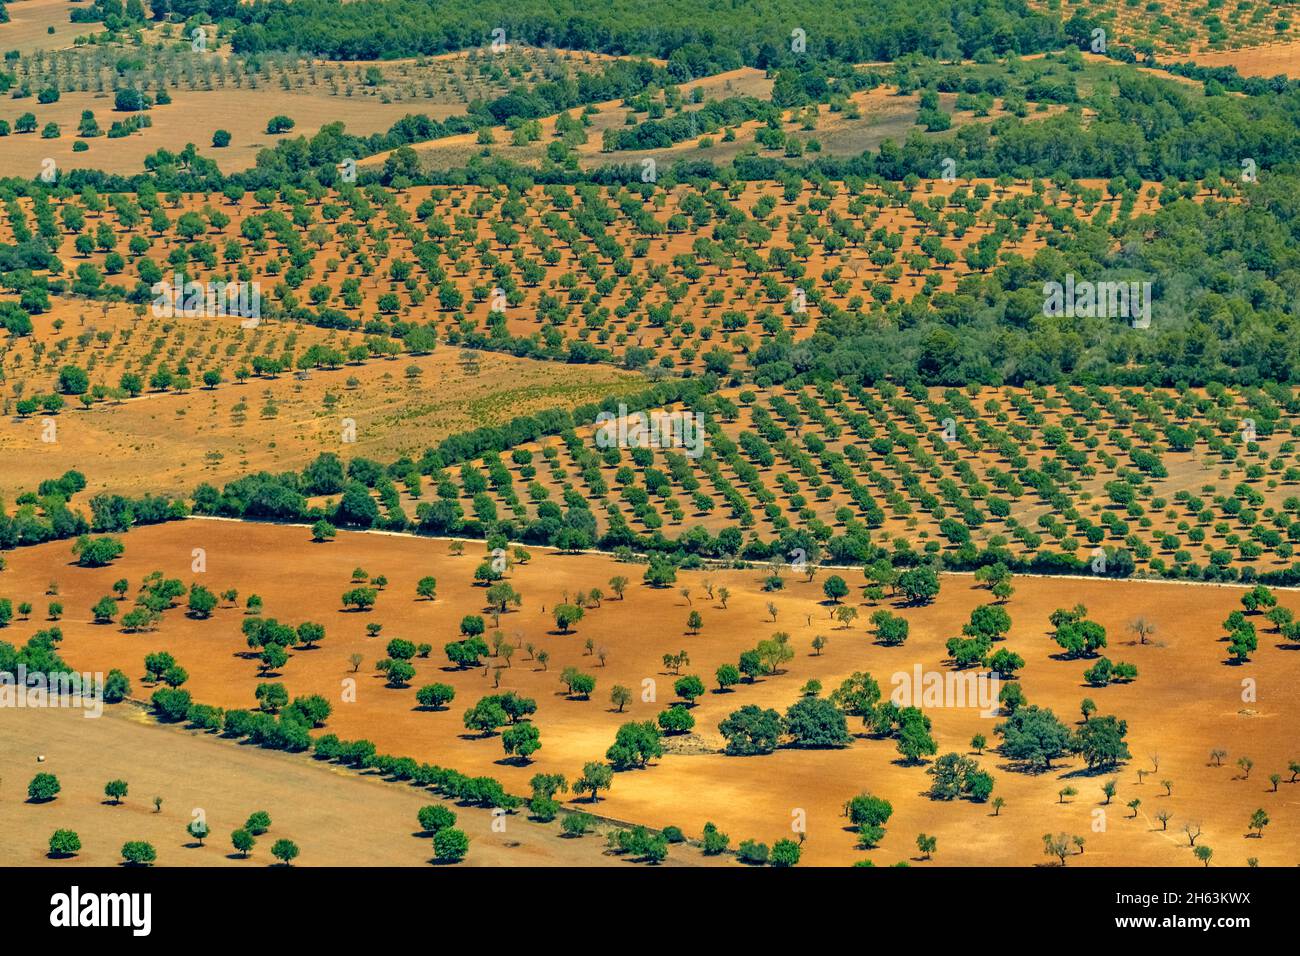 vista aérea,campos agrícolas con árboles verdes,campos,mallorca,islas baleares,españa Foto de stock